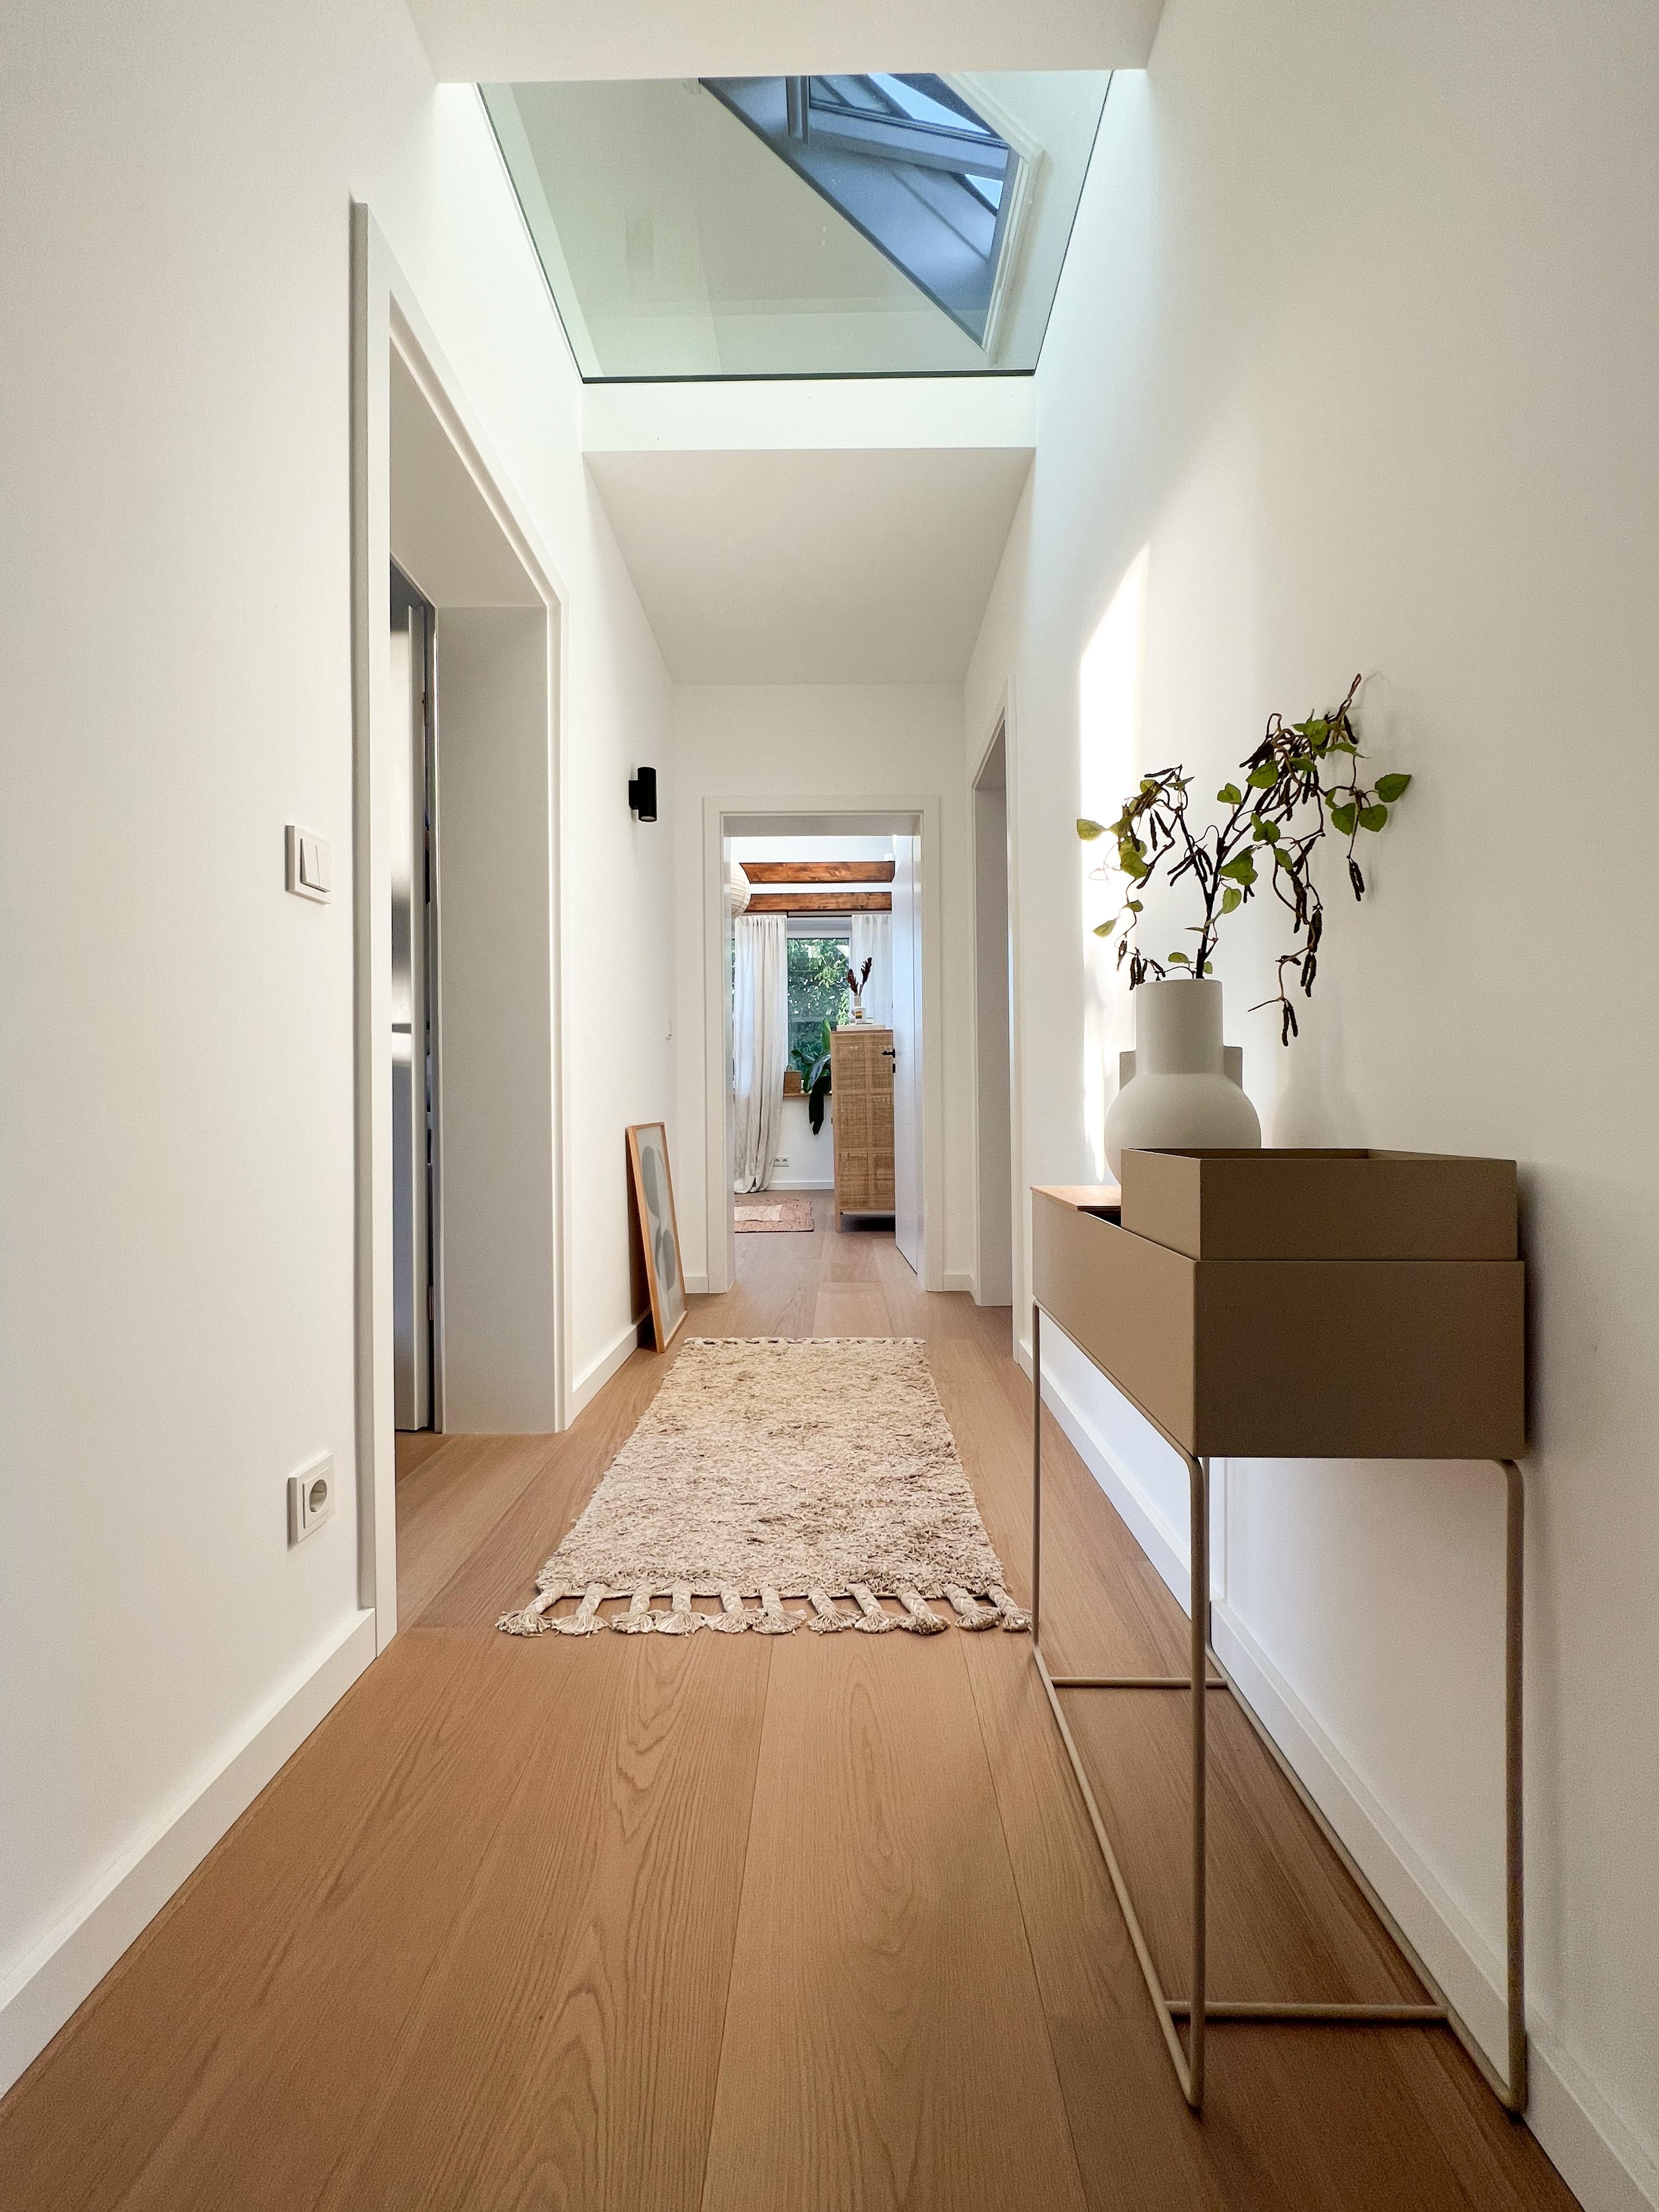 Flur mit Blick ins Dach – Panzerglas im Spitzboden für mehr Lichteinfall im Flur 🤍 #flur #hallway #altbaurenovierung 